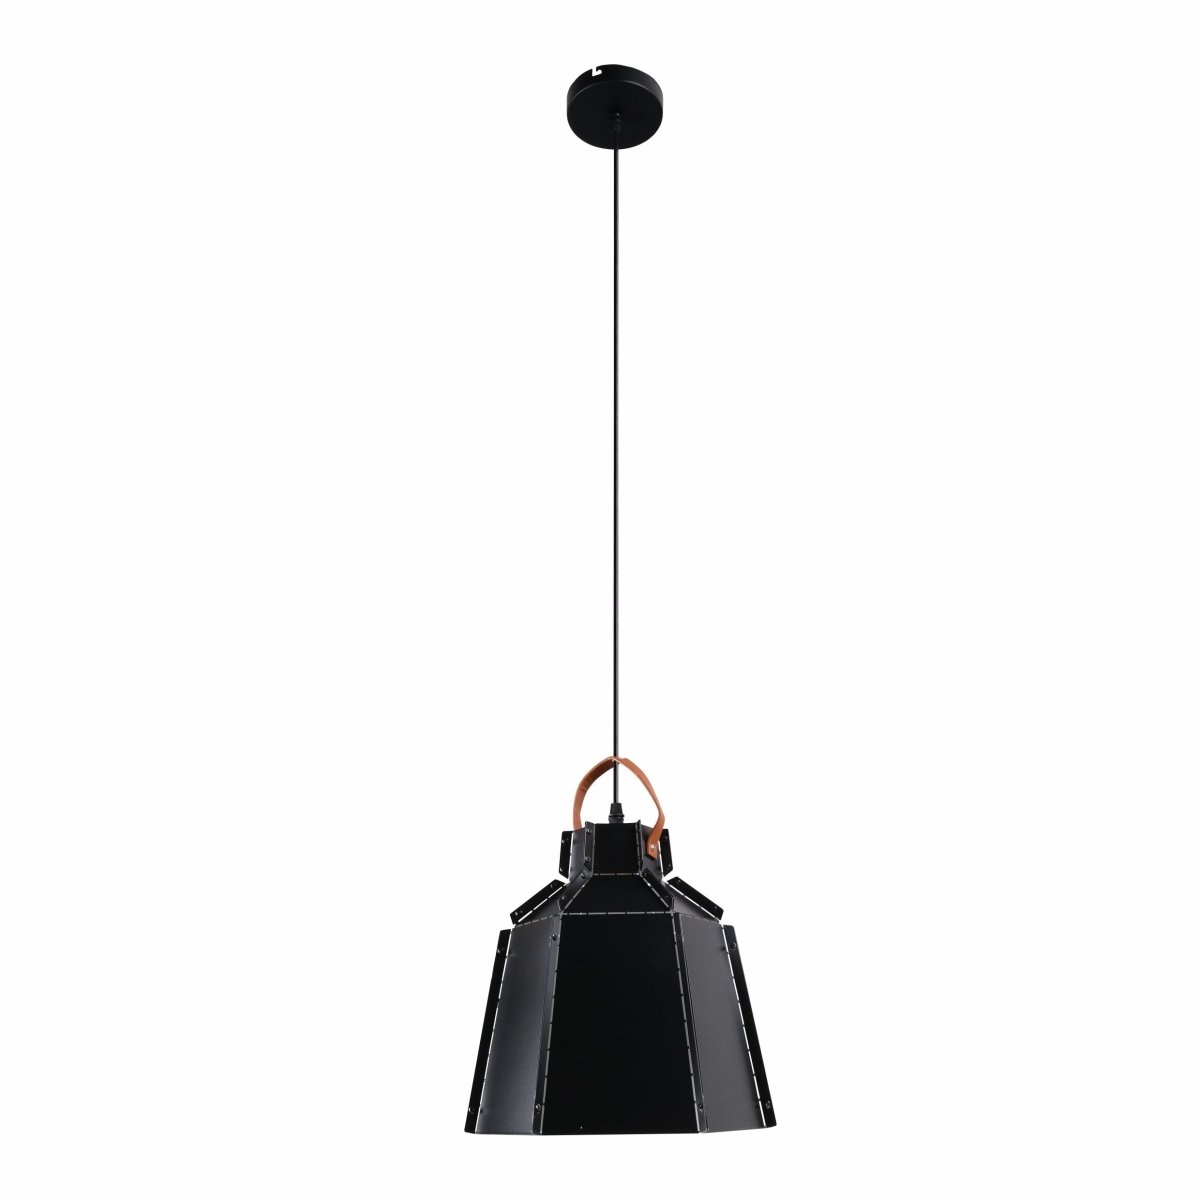 Main image of Esagono Mini Black Metal Pendant Light with E27 Fitting | TEKLED 159-17364